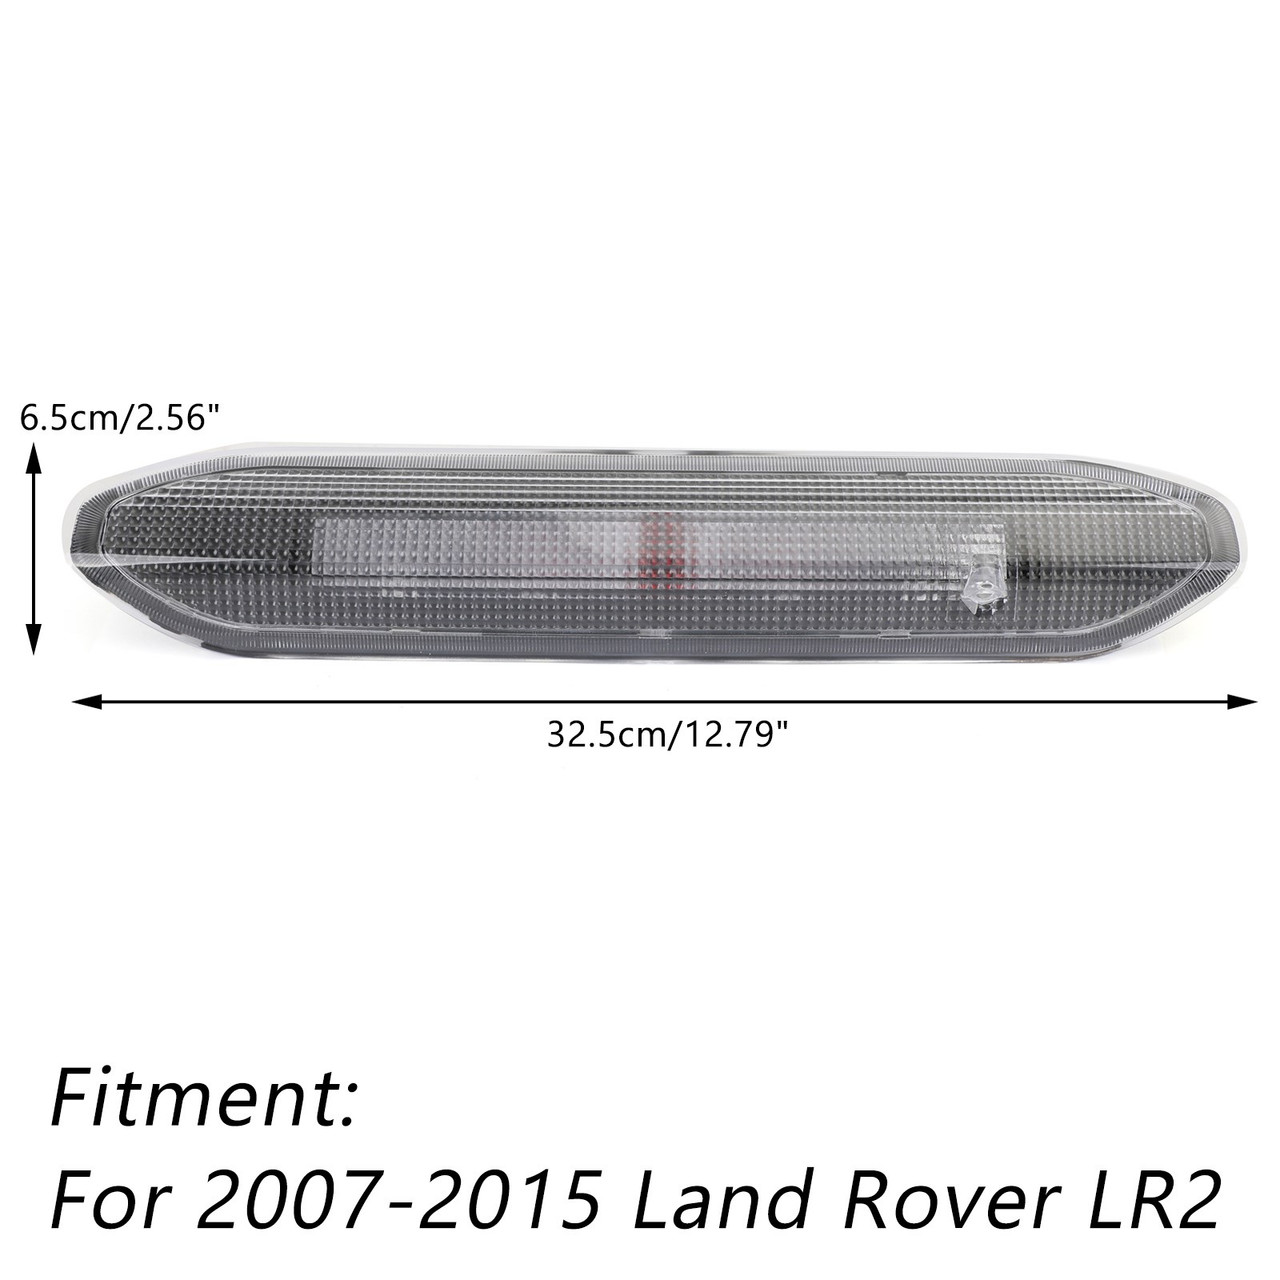 Brake Light White LR036355/LR014462 Fits For Land Rover Freelander LR2 2007-2015 White